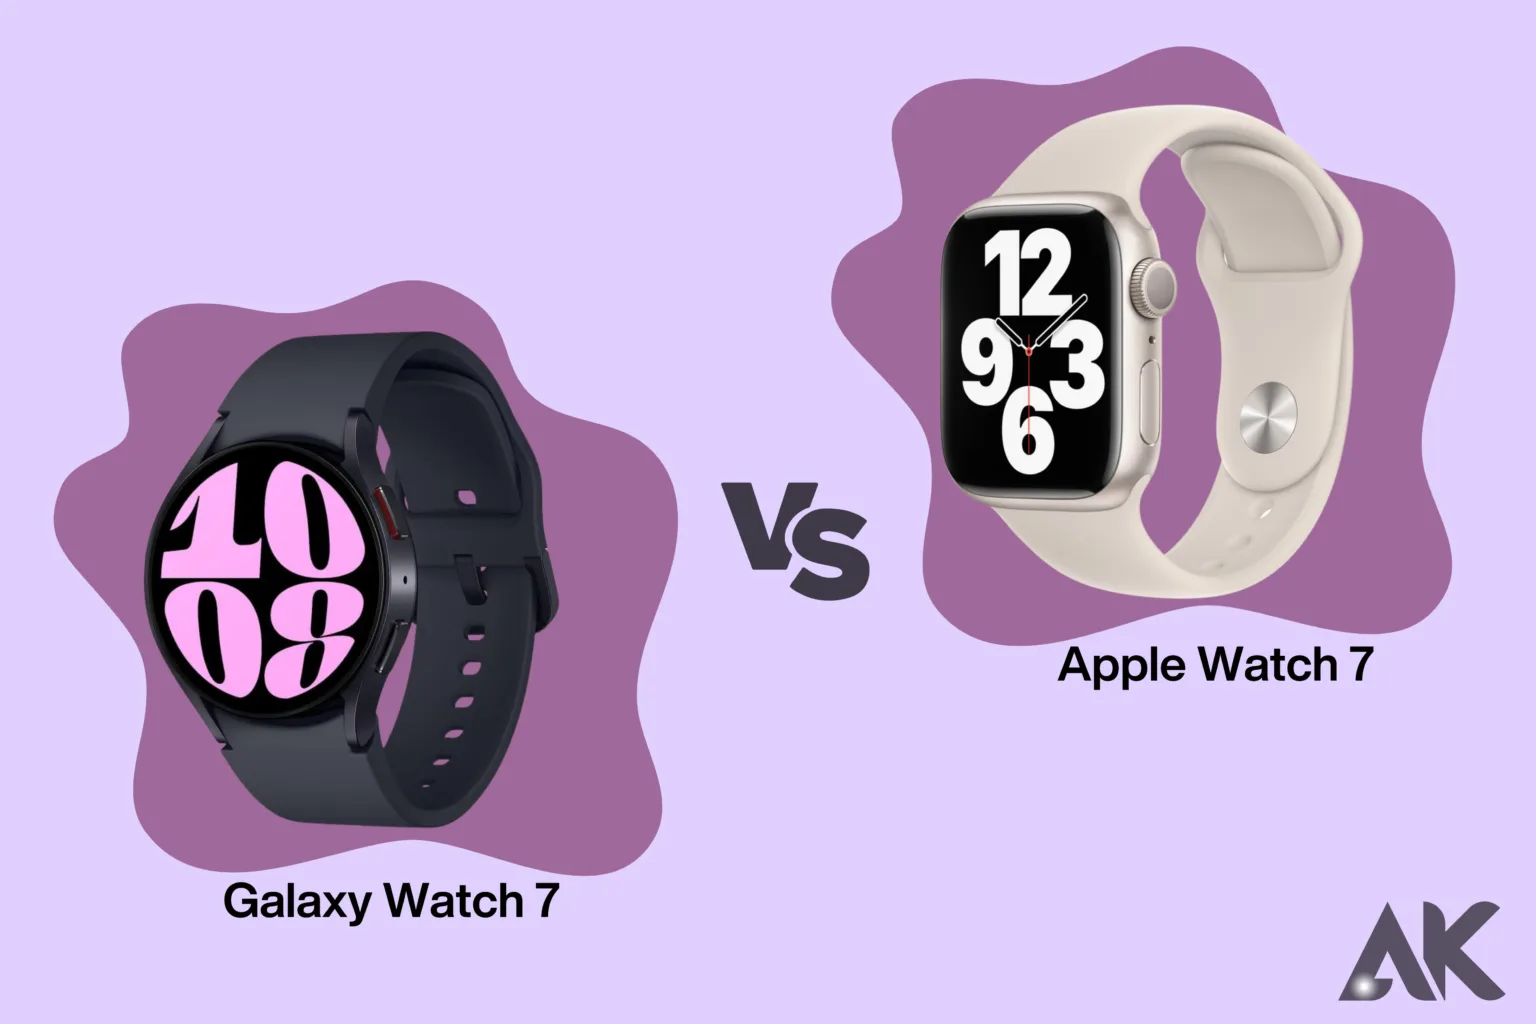 Galaxy watch 7 vs Apple watch 7